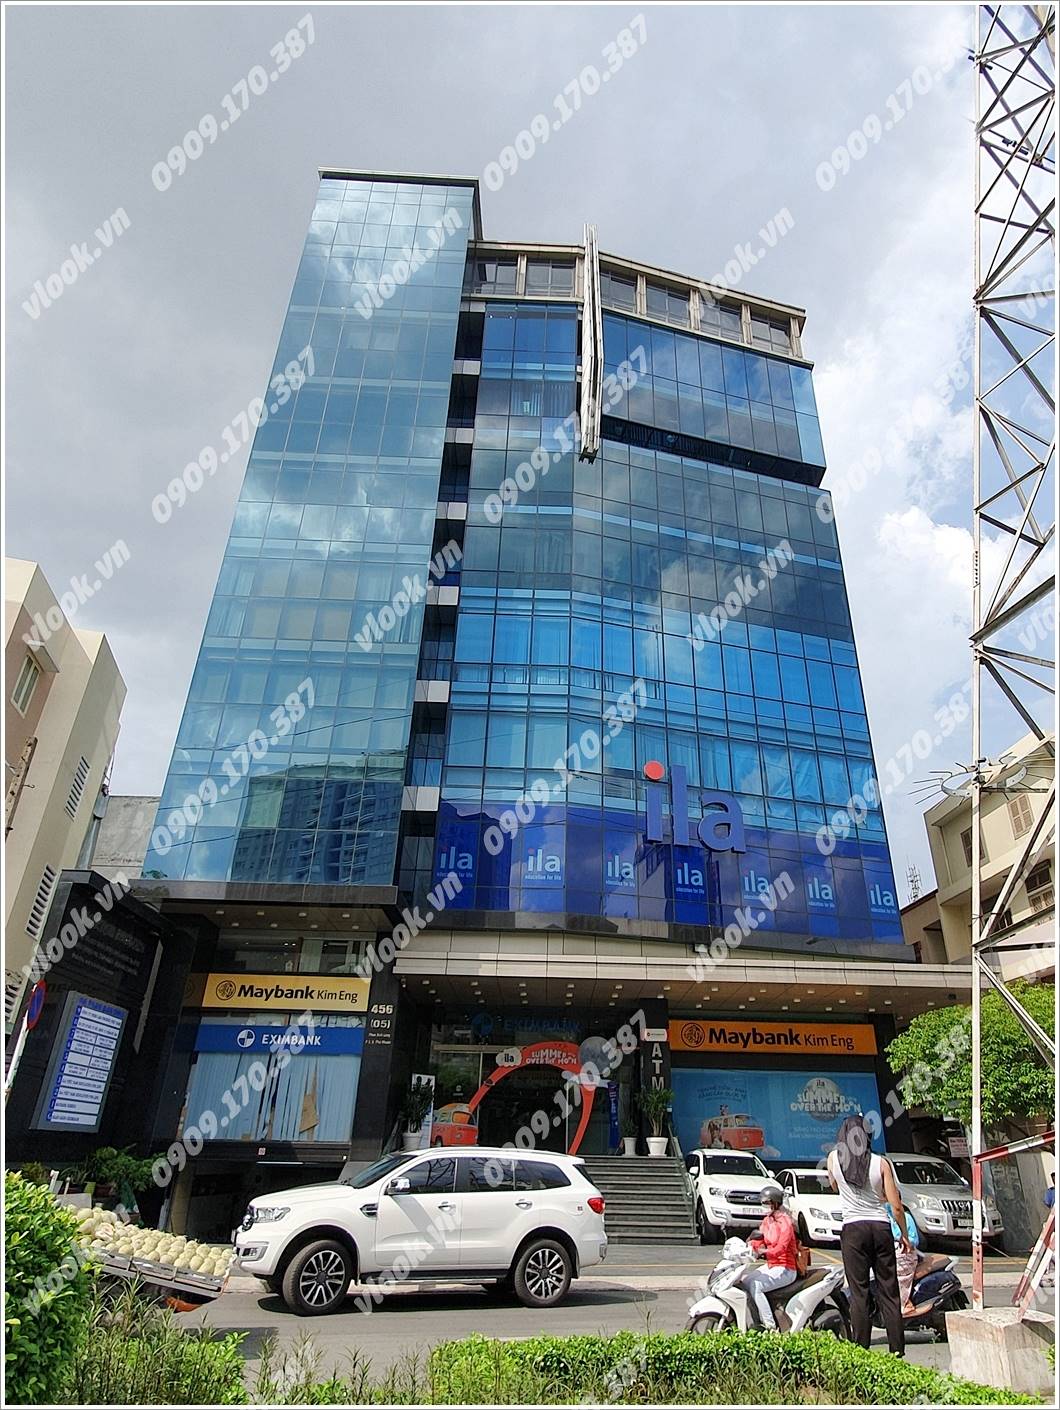 Cao ốc văn phòng cho Hà Phan Building, Phan Xích Long, Quận Phú Nhuận, TP.HCM - vlook.vn